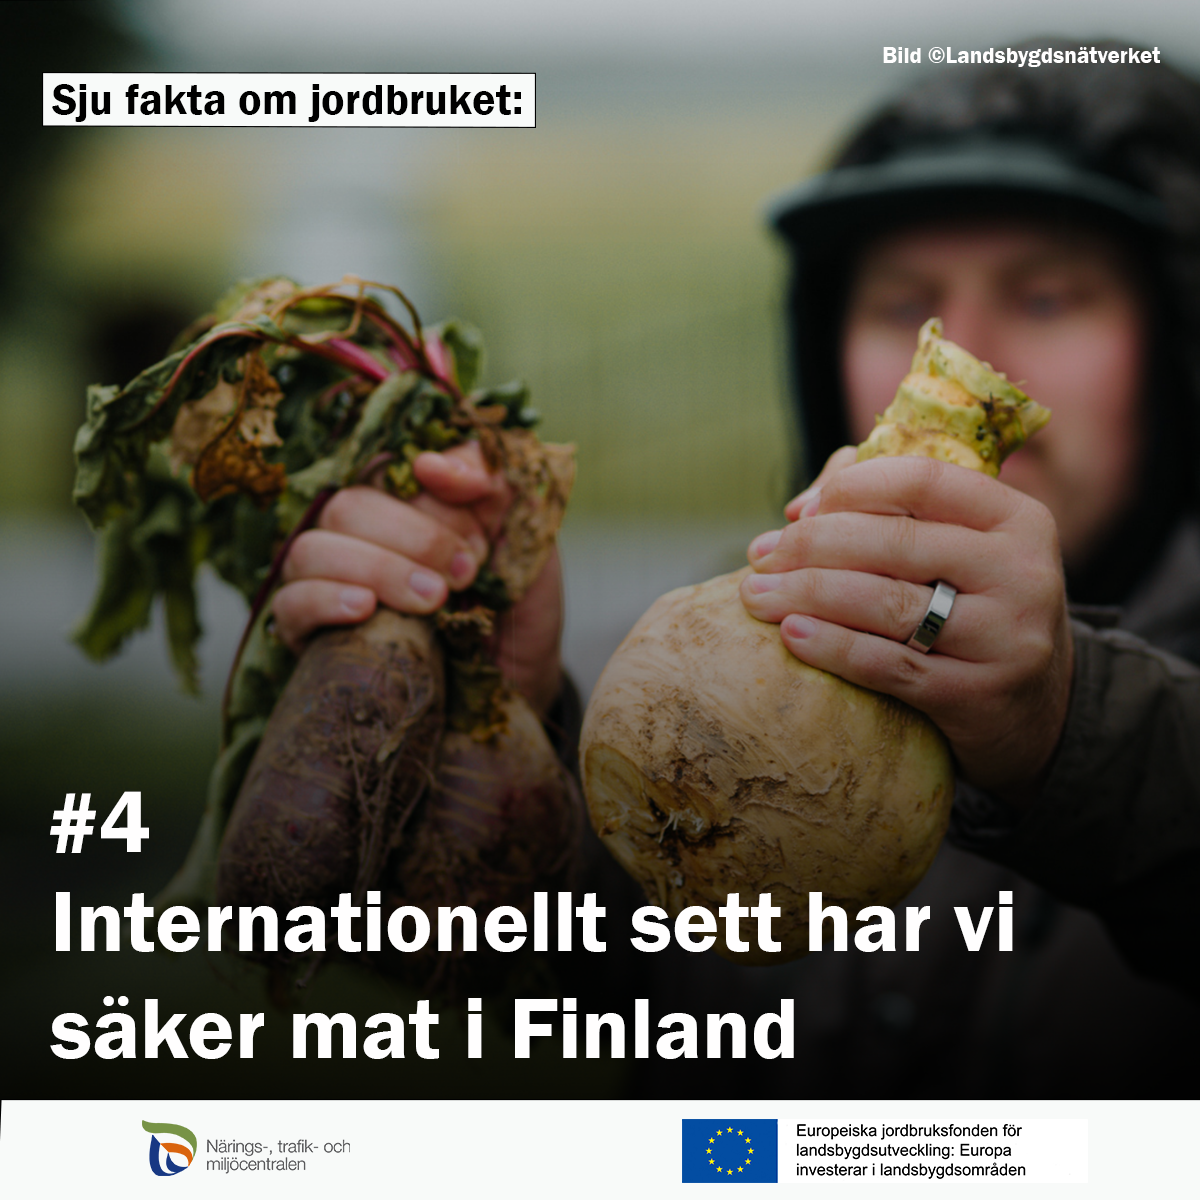 Man visar rotsaker. Text: Sju fakta om jordbruket: #4 Internationellt sett har vi säker mat i Finland